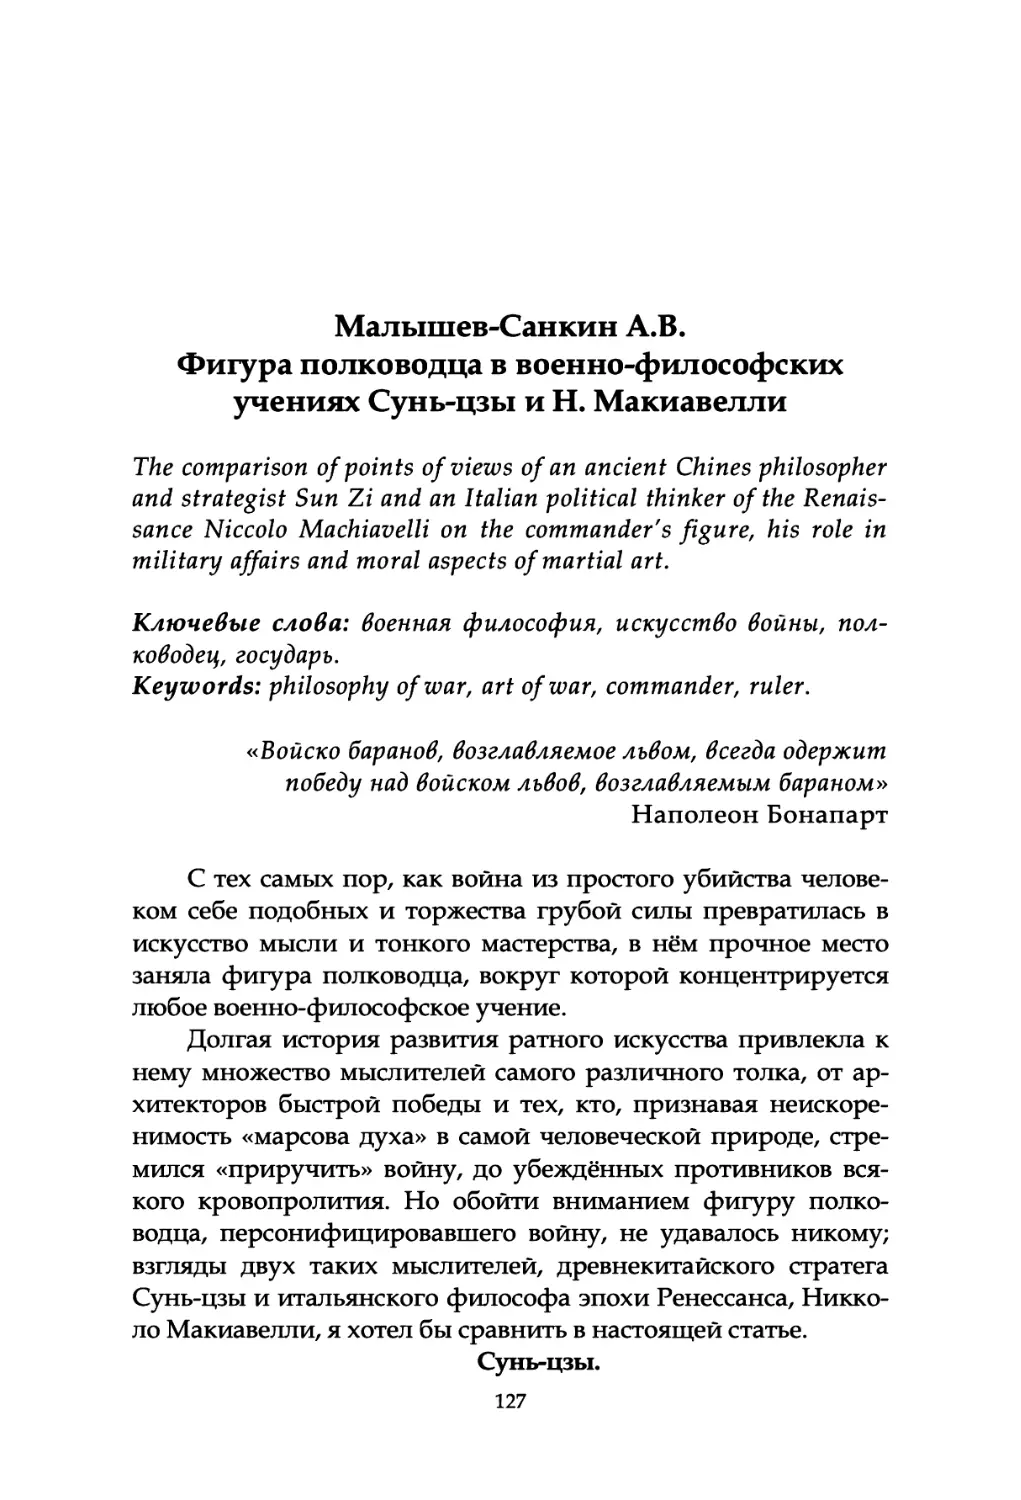 Малышев-Санкин A.B. Фигура полководца в военно-философских учениях Сунь-цзы и Н. Макиавелли